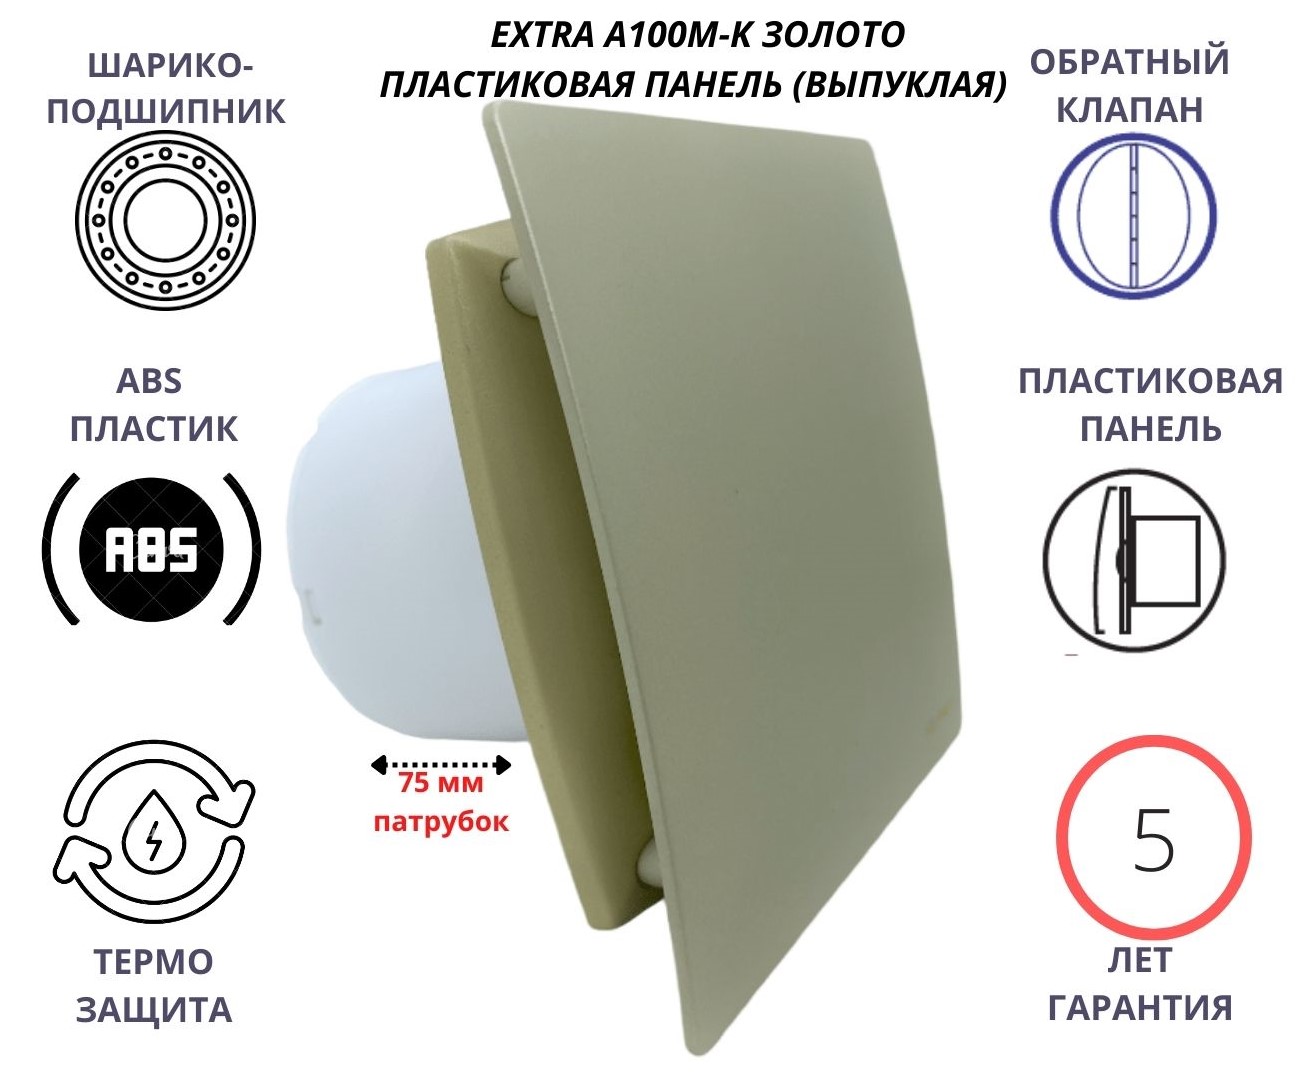 Вентилятор D100мм с пластиковой золотой панелью EXTRA A100М-K, Сербия вентилятор mtg d100мм с пластиковой плоской панелью a100м pl камень беж